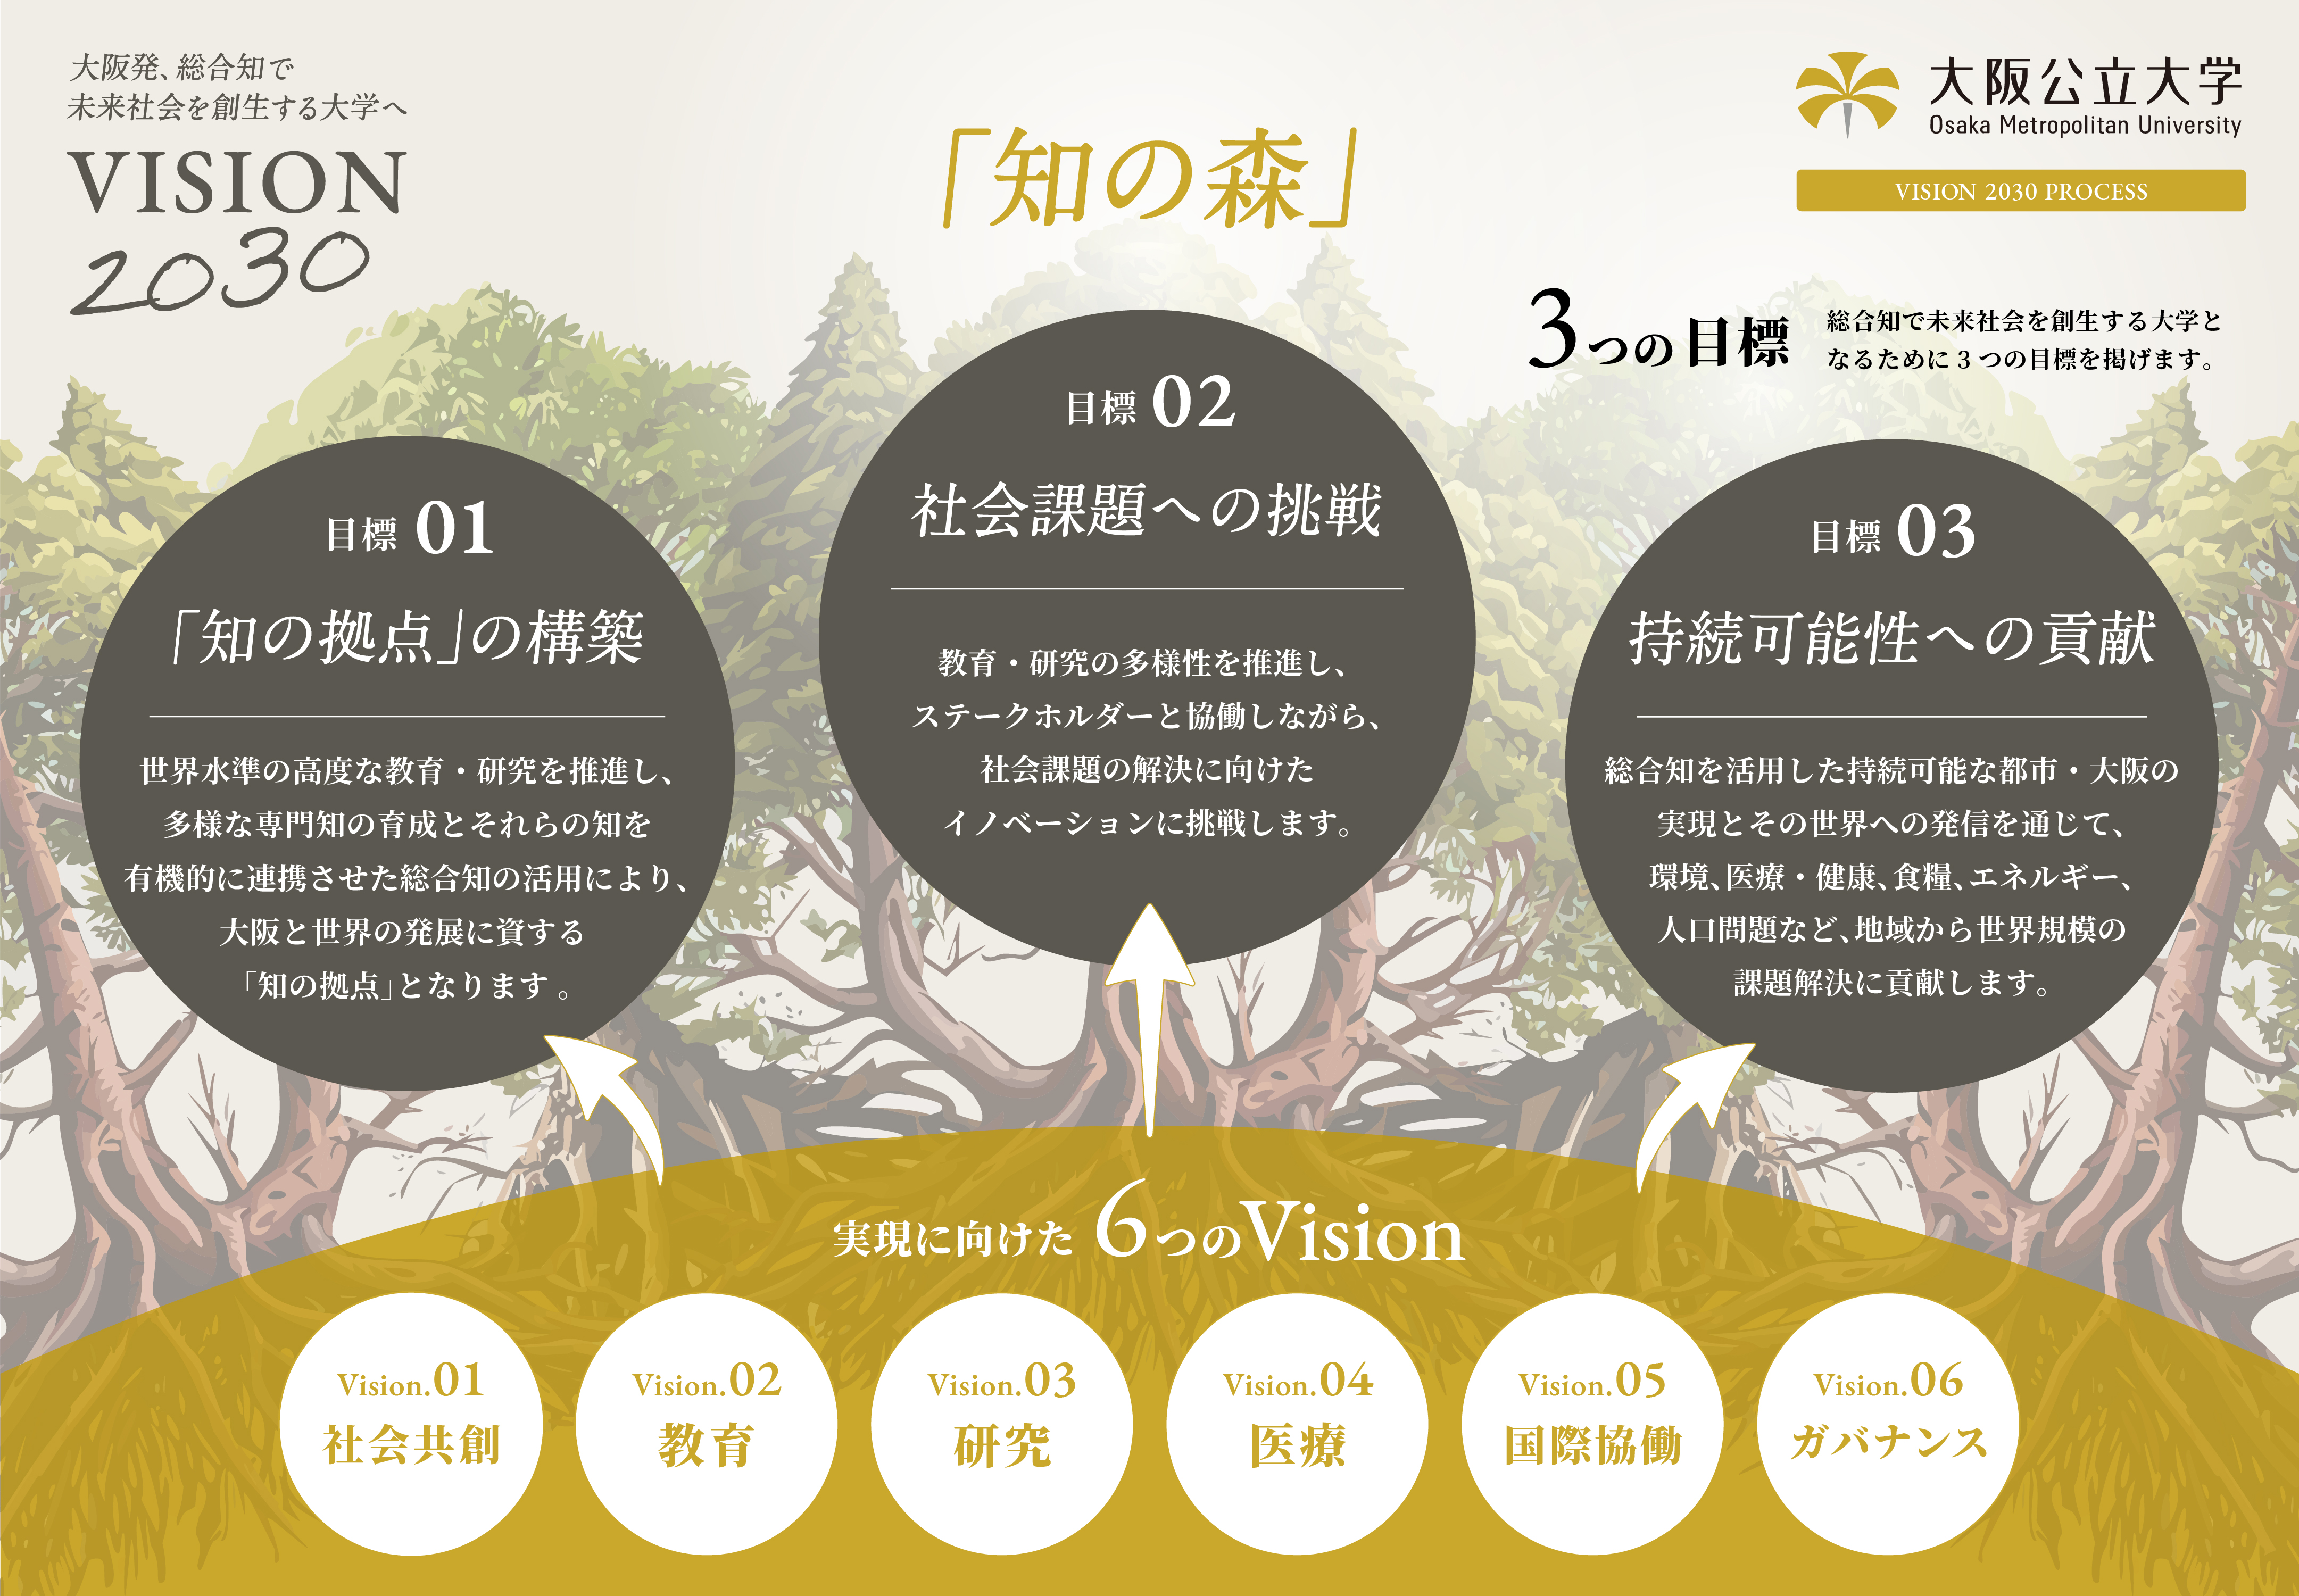 大阪発、総合知で未来社会を創生する大学へ VISION 2030 「知の森」 大阪公立大学 Osaka Metropolitan University VISION 2030 PROCESS 実現に向けた6つのVision Vision01 社会共創 Vision02 教育 Vision03 研究 Vision04 医療 Vision05 国際協働 Vision06 ガバナンス 3つの目標 総合知で未来社会を創生する大学となるために3つの目標を掲げます。 目標01 「知の拠点」の構築：世界水準の高度な教育・研究を推進し、多様な専門知の育成とそれらの知を有機的に連携させた総合知の活用により、大阪と世界の発展に資する「知の拠点」となります。 目標02 社会課題への挑戦：教育・研究の多様性を推進し、ステークホルダーと協働しながら、社会課題の解決に向けたイノベーションに挑戦します。 目標03 持続可能性への貢献：総合知を活用した持続可能な都市・大阪の実現とその世界への発信を通じて、環境、医療・健康、食糧、エネルギー、人口問題など、地域から世界規模の課題解決に貢献します。